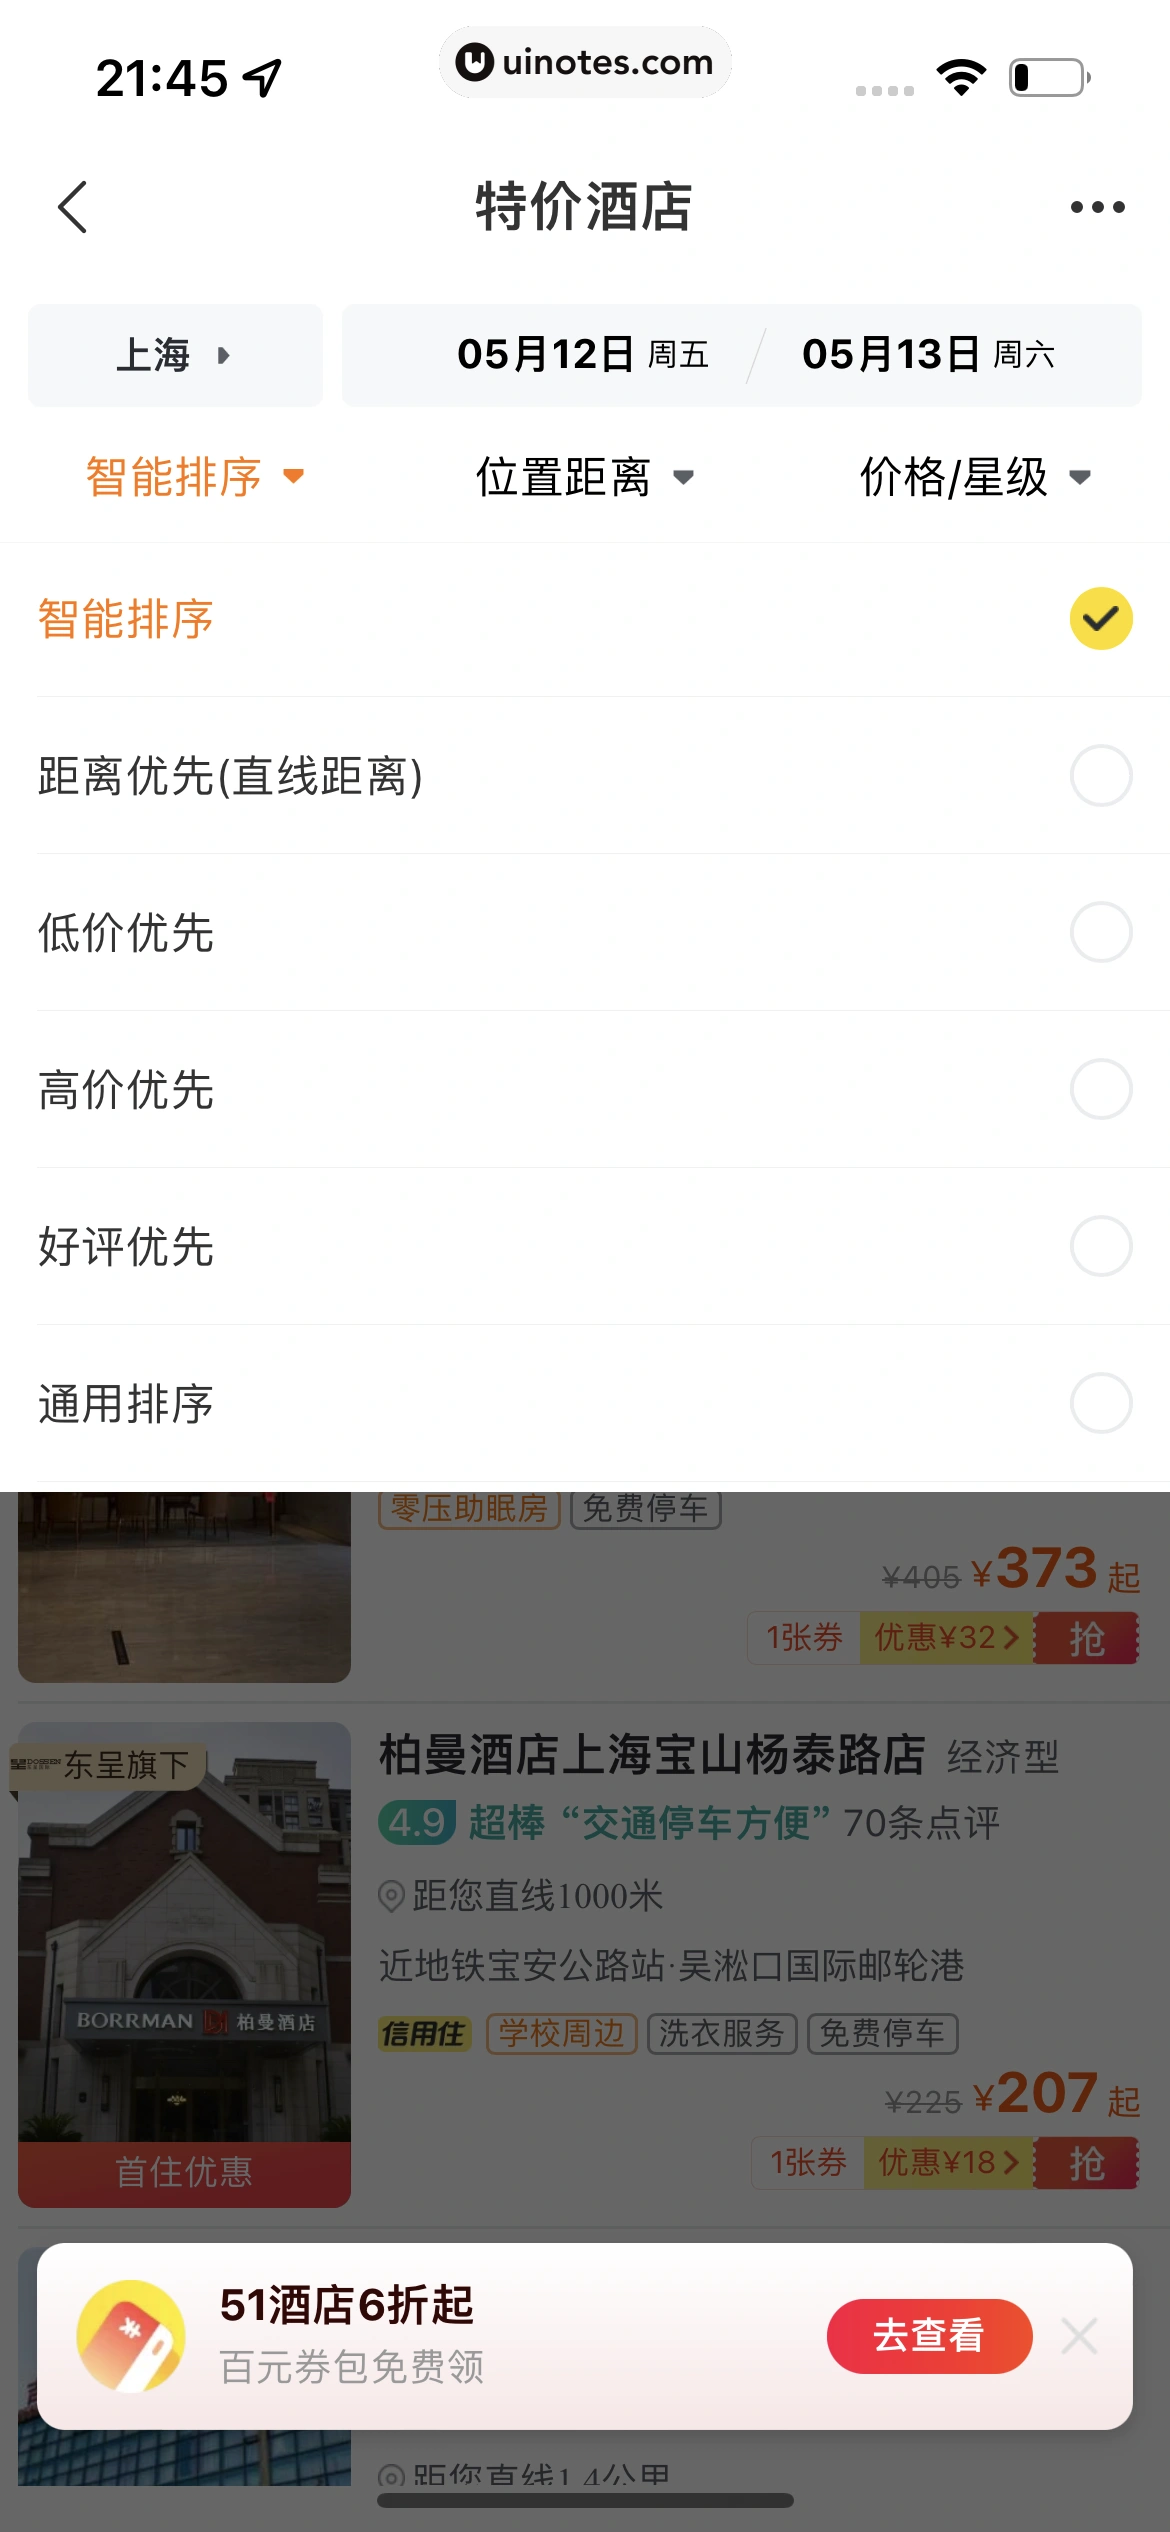 飞猪旅行 App 截图 245 - UI Notes